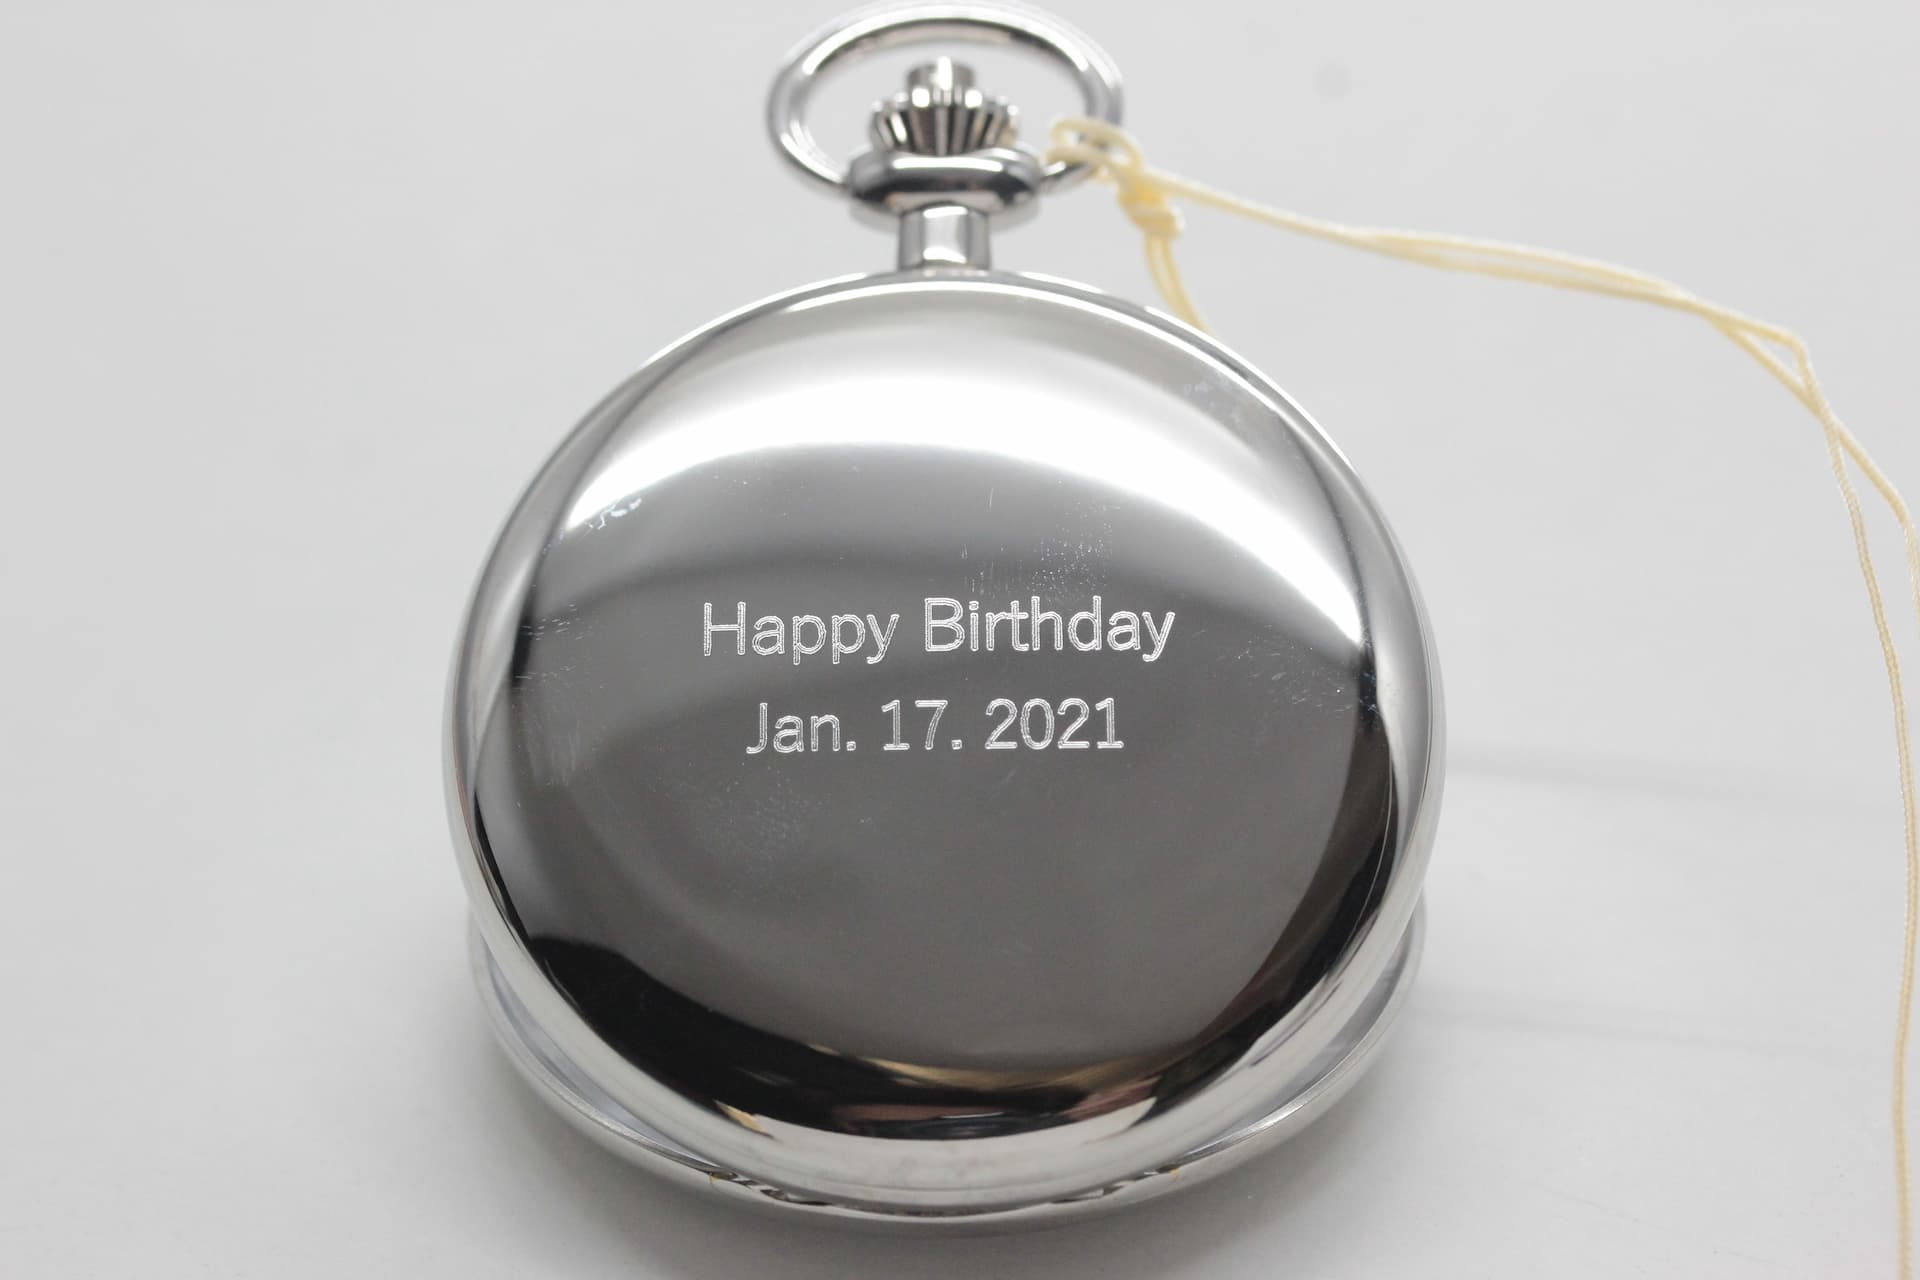 彼氏への誕生日プレゼントとして文字刻印した例。